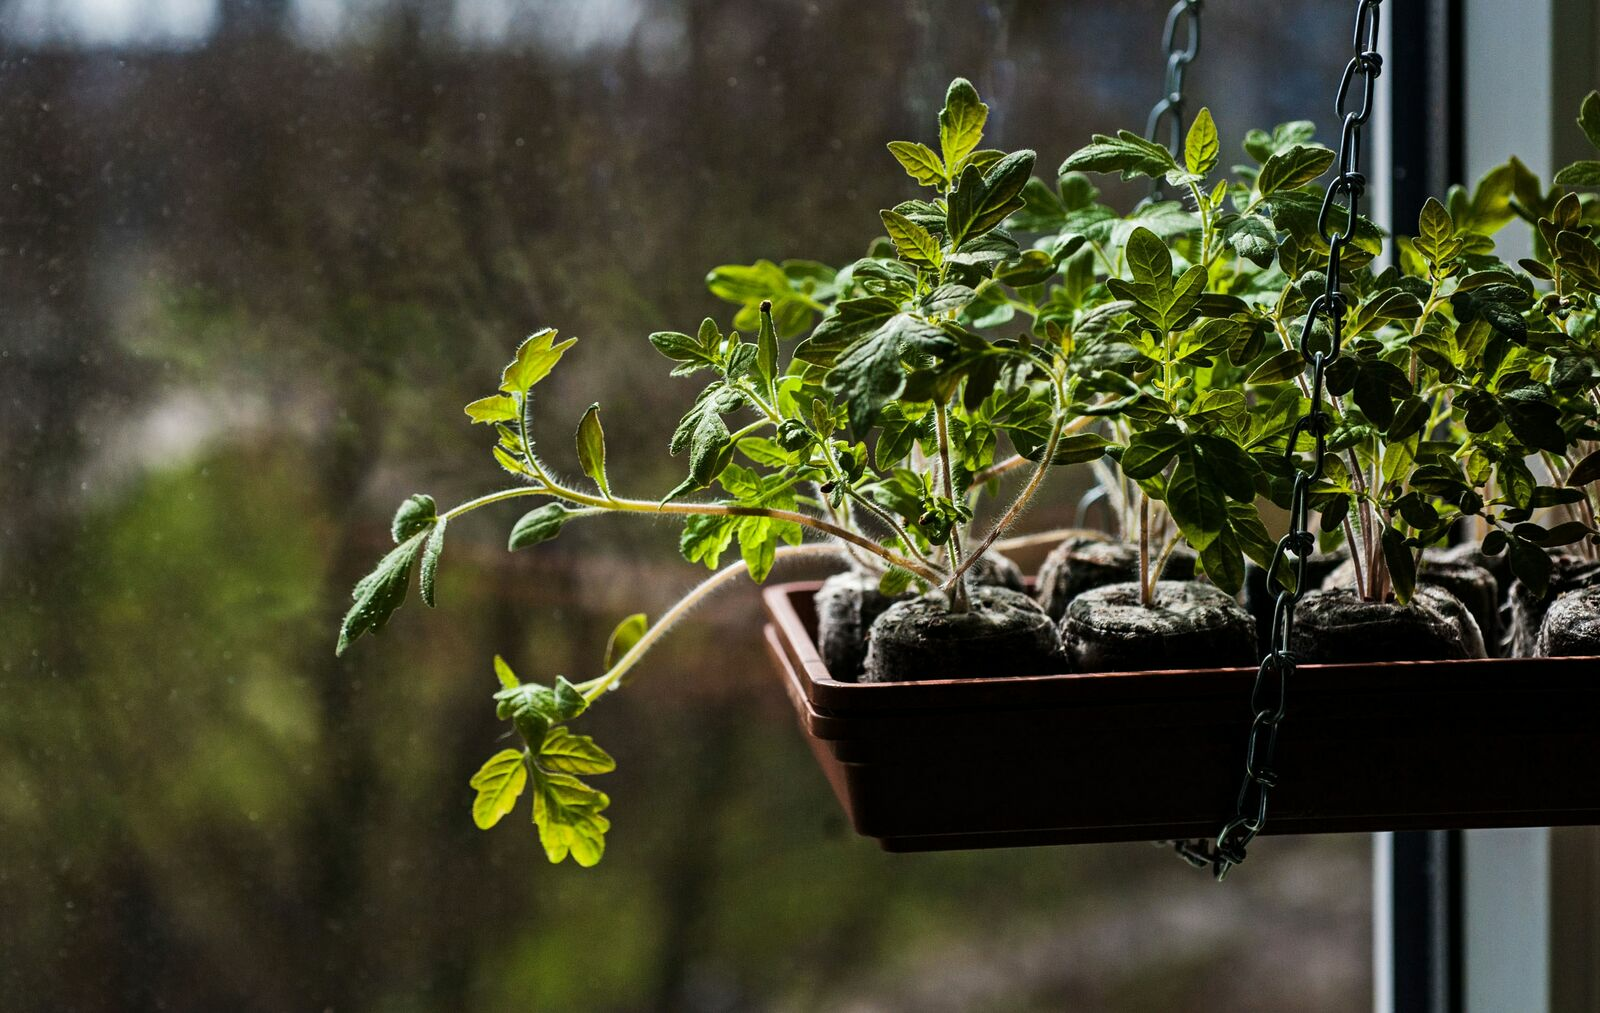 Propagating seedlings: Growing vegetable plants